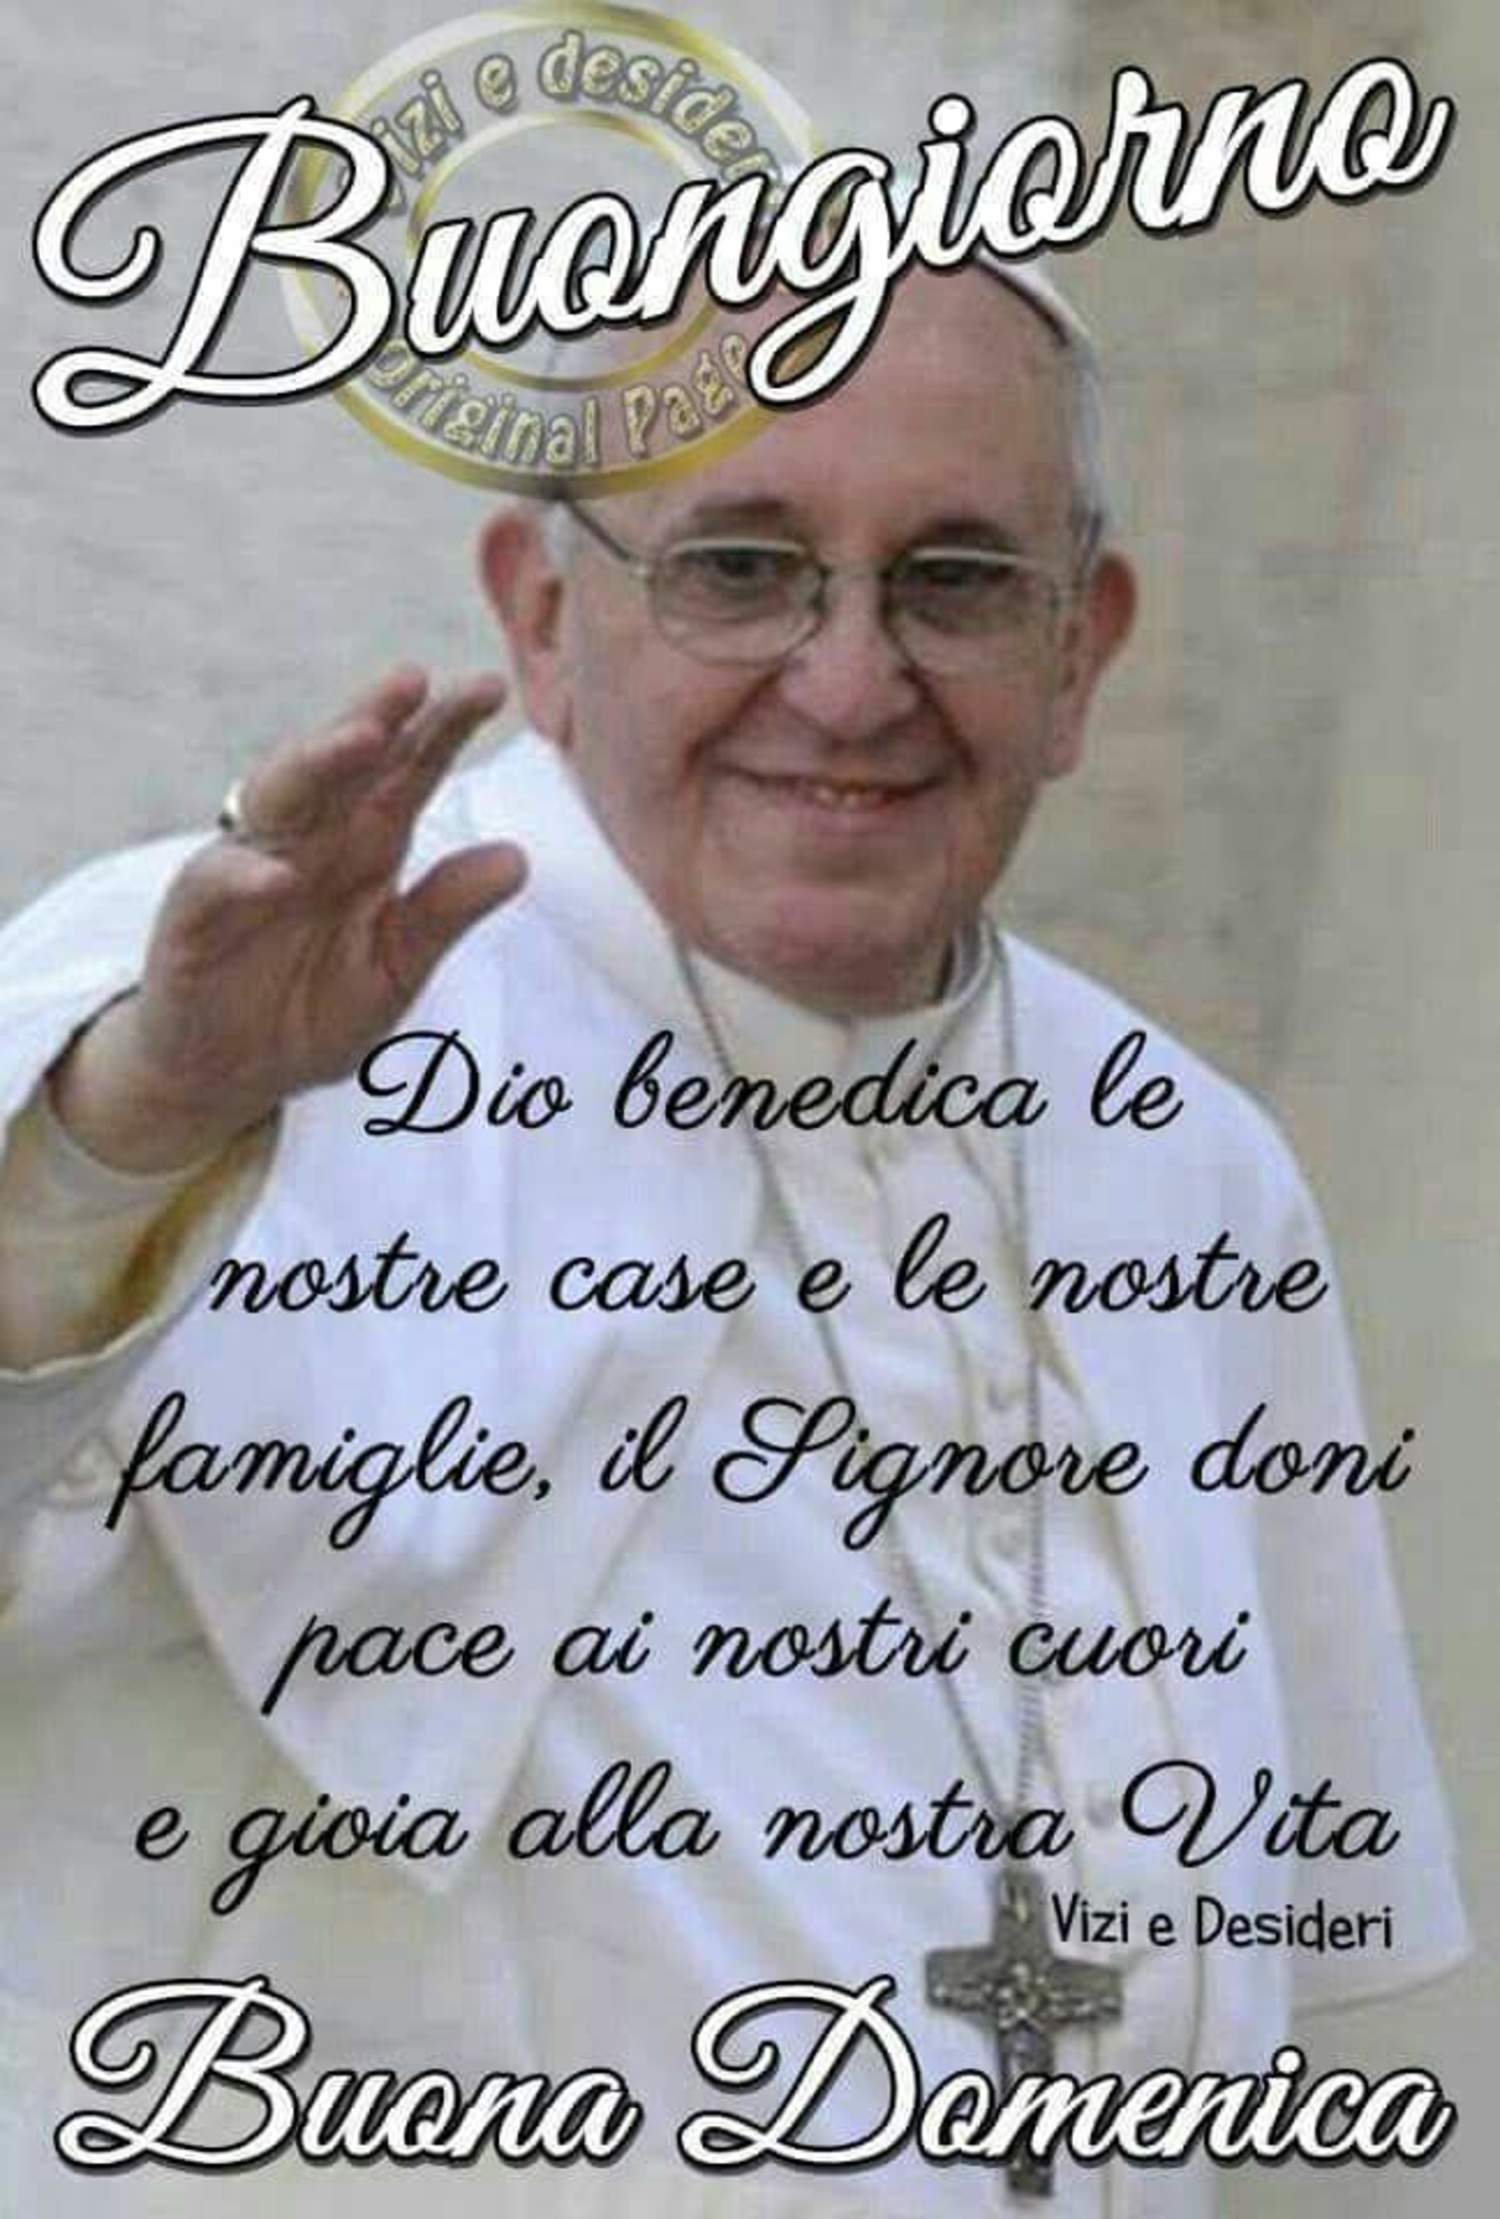 Buongiorno con Papa Francesco immagini 2